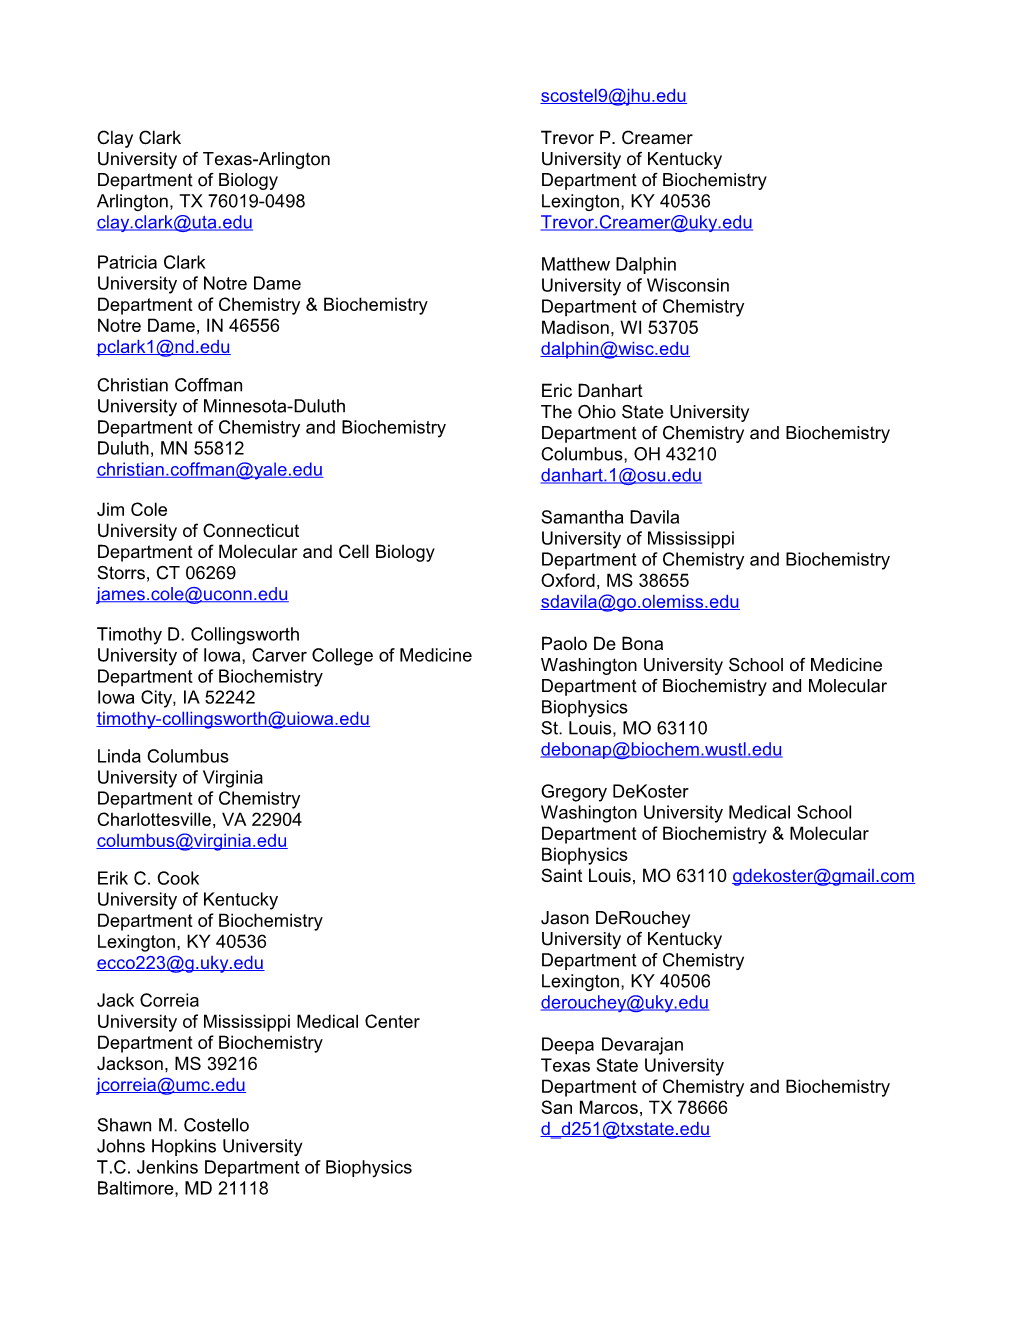 Alphabetical List of Participants